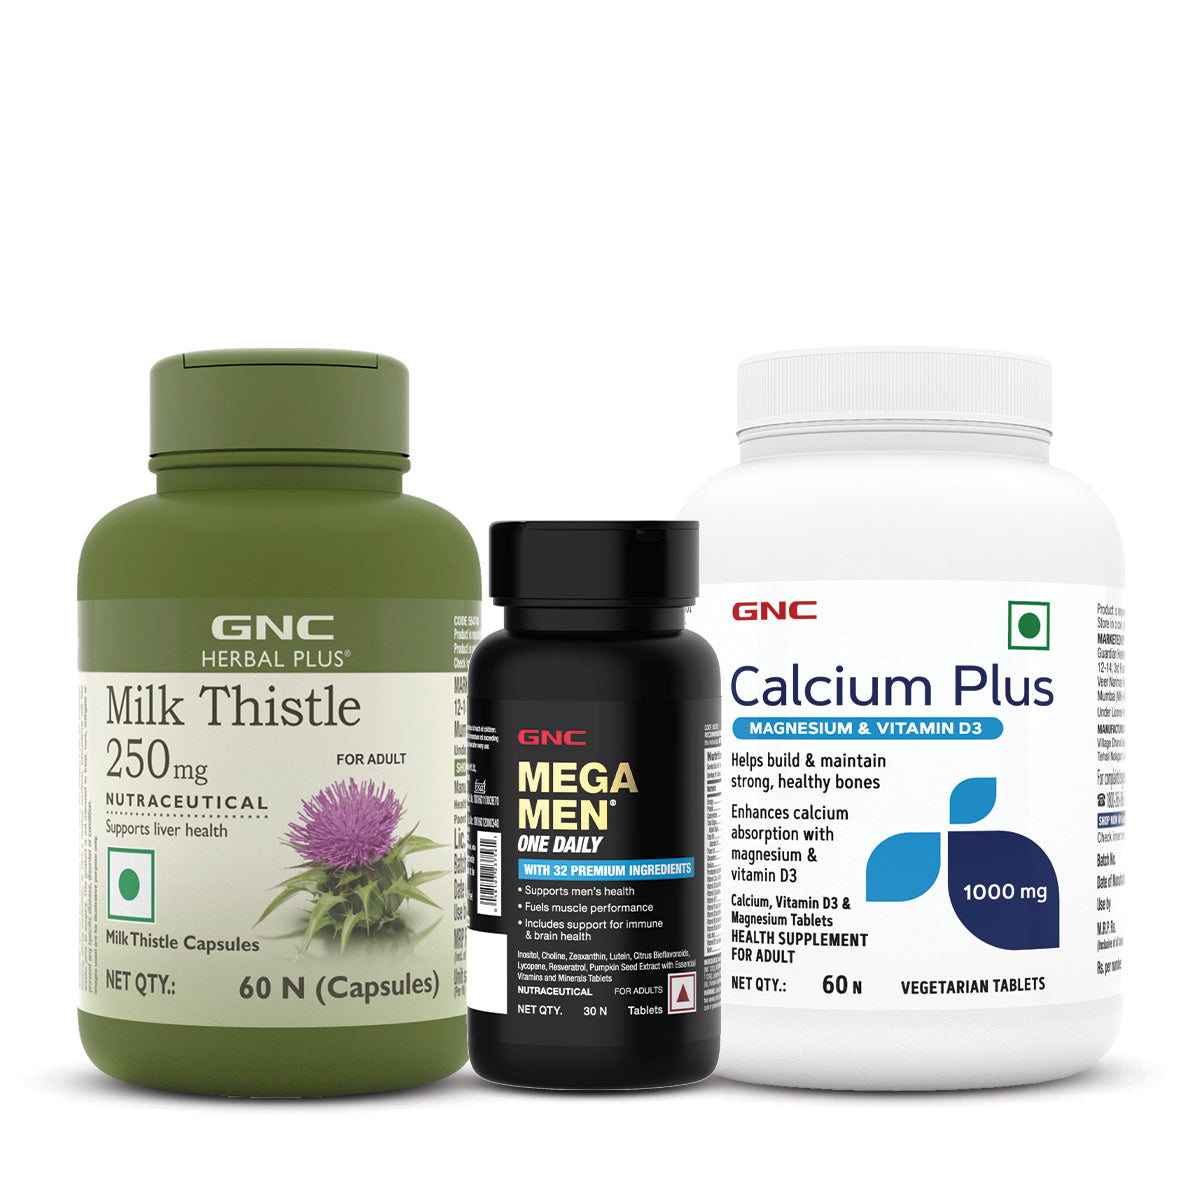 GNC Herbal Plus Milk Thistle + Calcium Plus With Magnesium & Vitamin D3  + Mega Men One Daily Multivitamin for Men